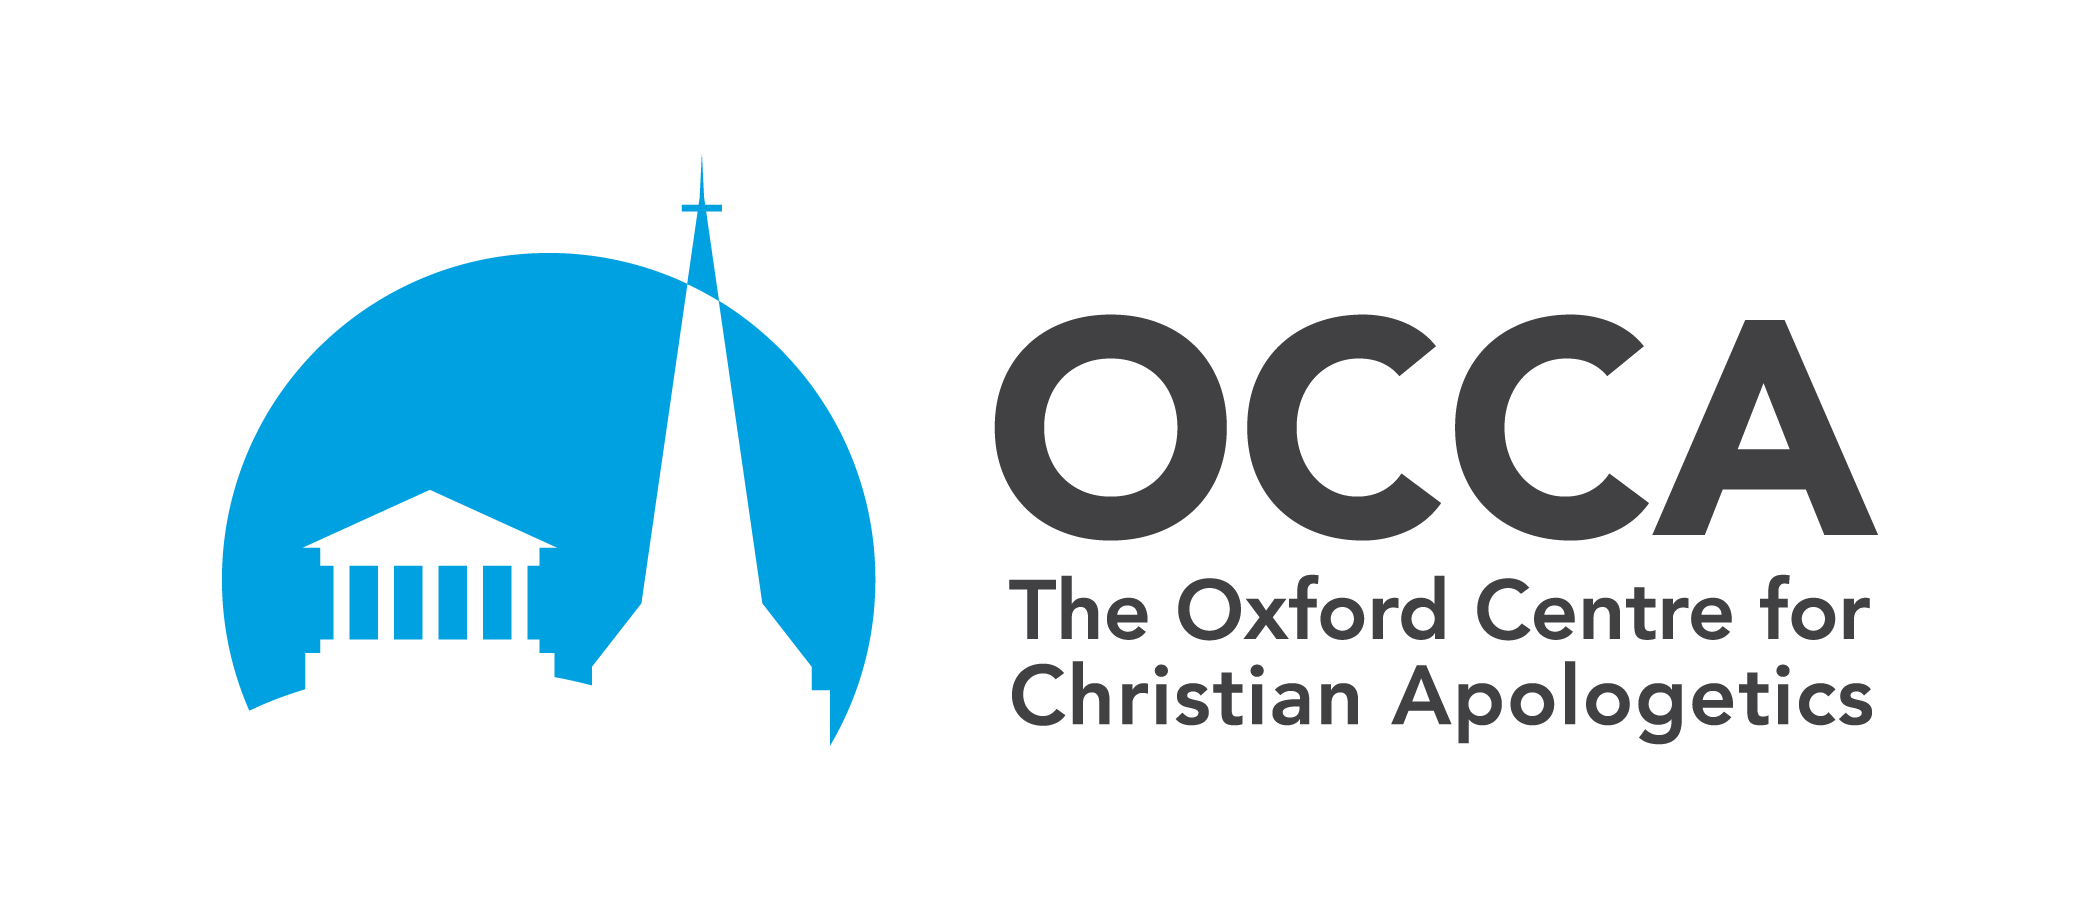 OCCA Logo